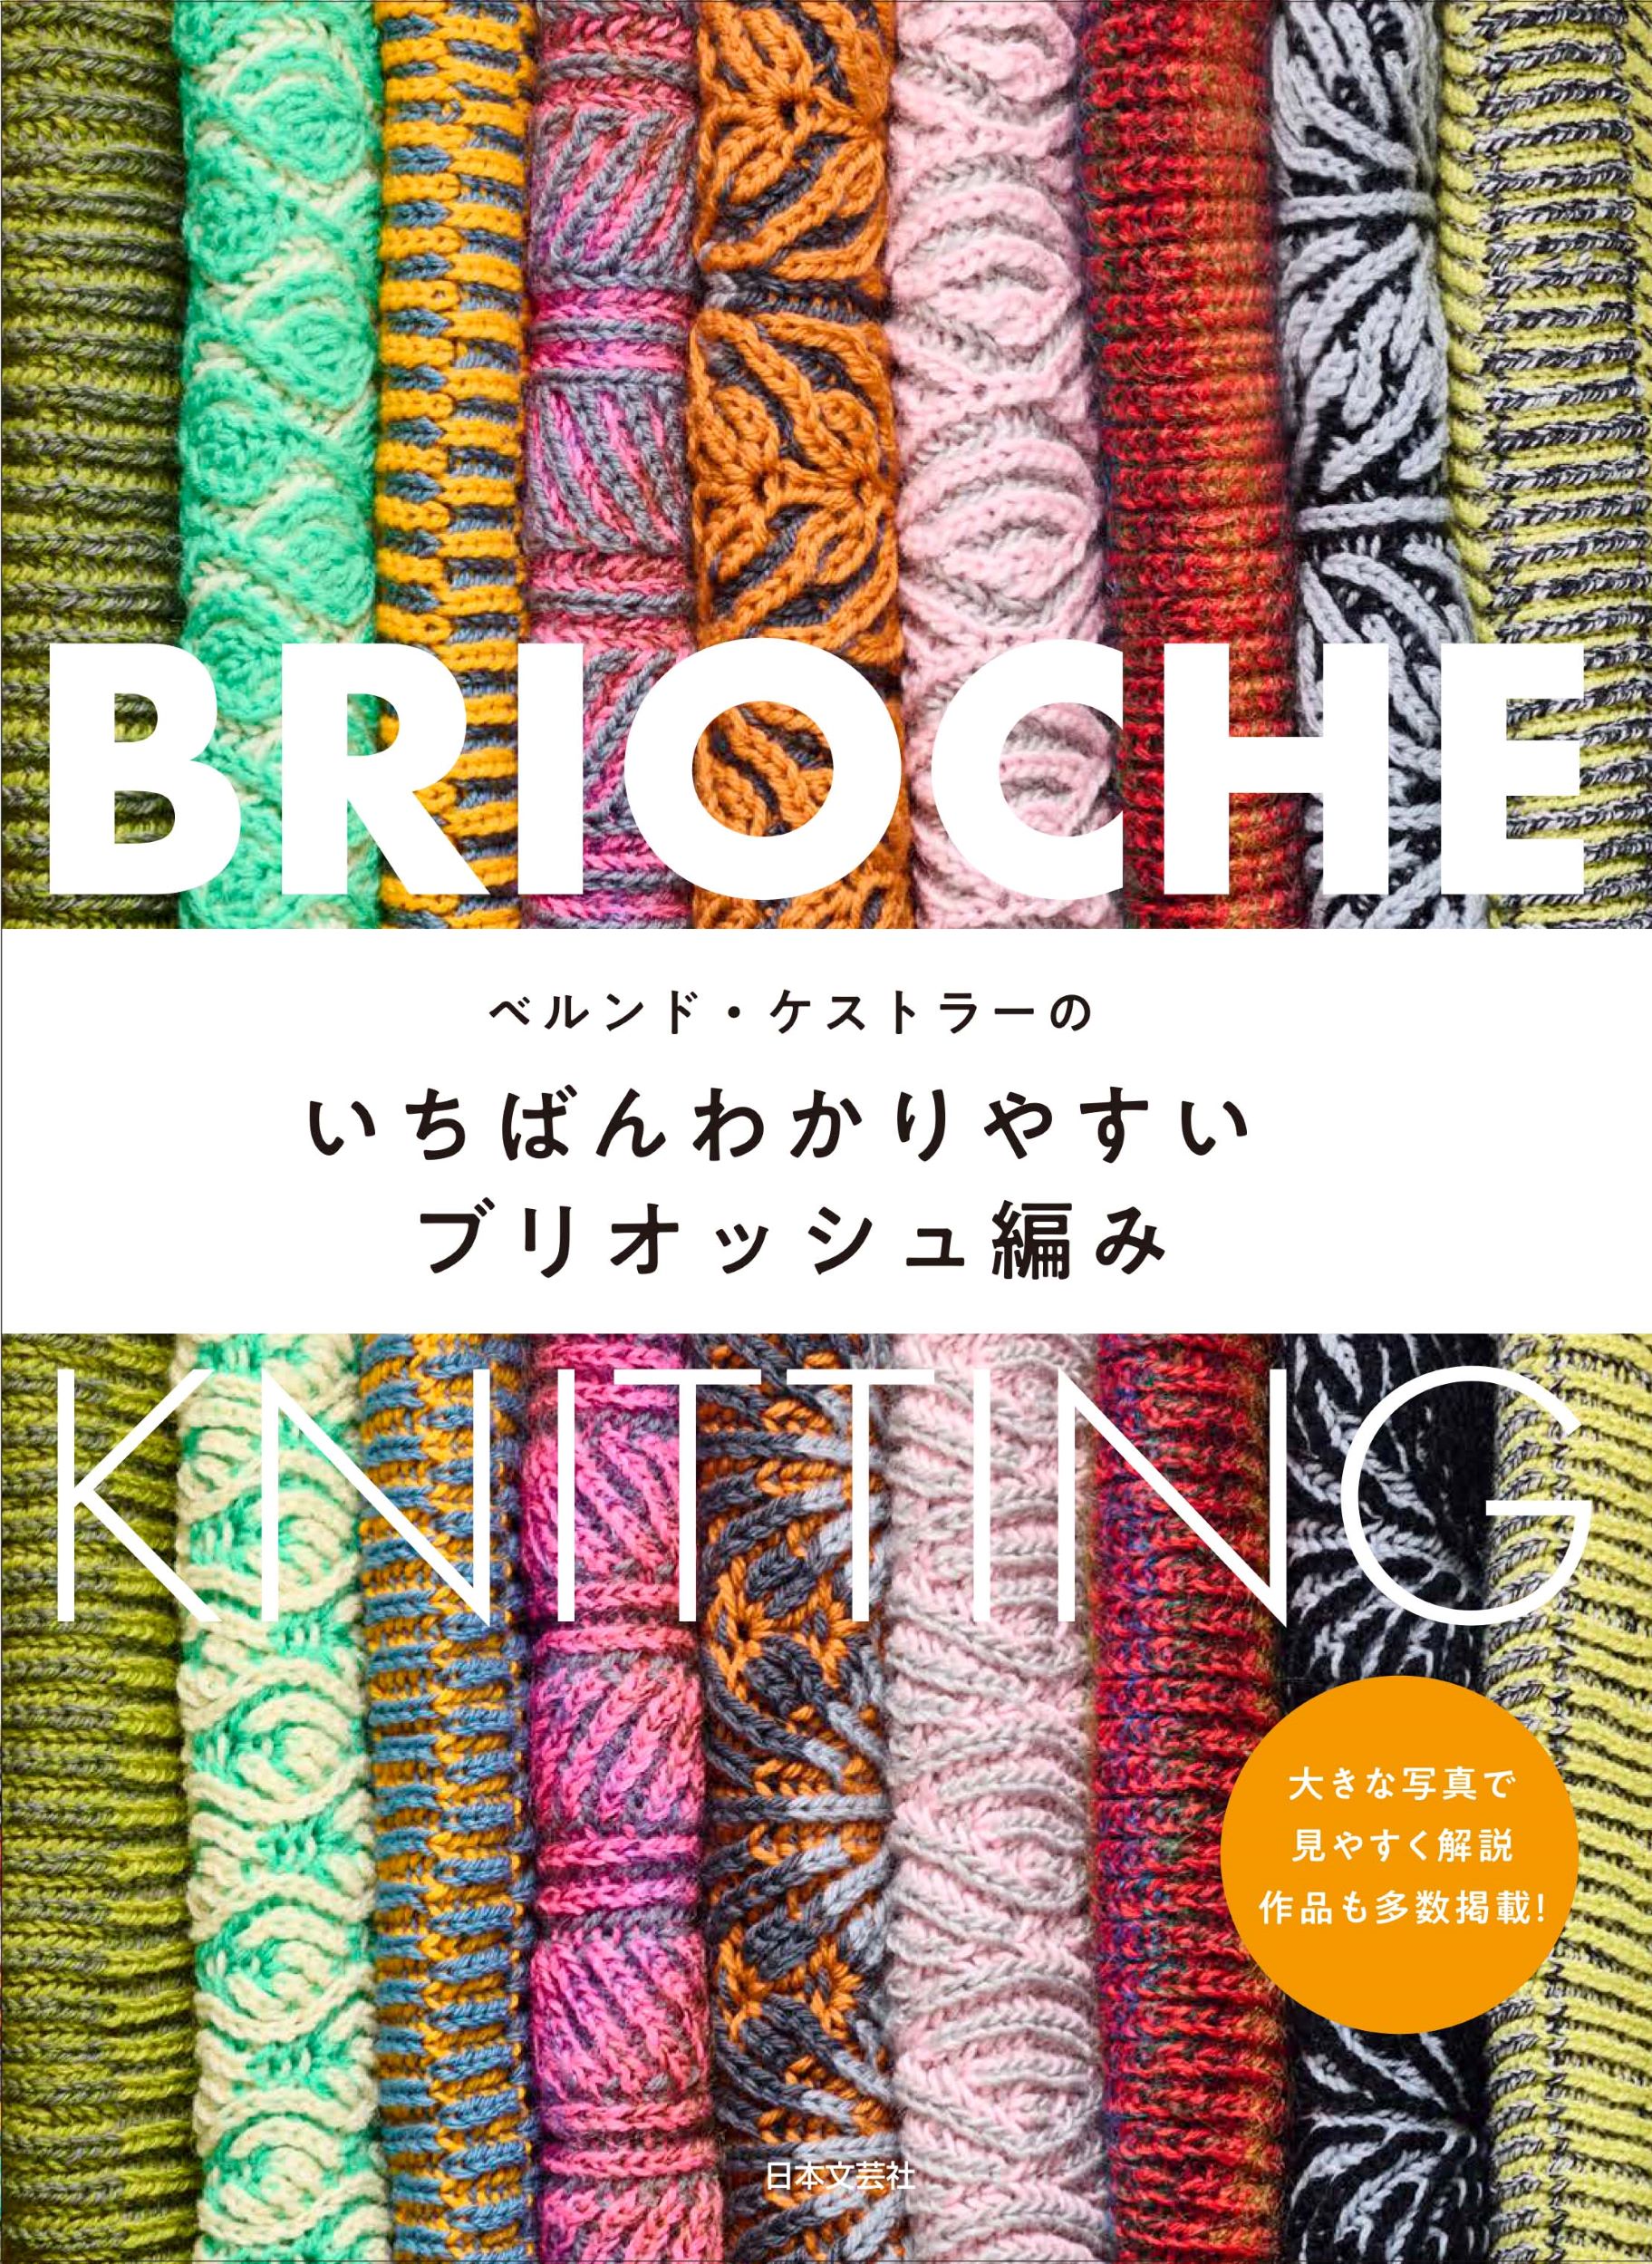 ベルンド・ケストラーのいちばんわかりやすいブリオッシュ編みの商品画像